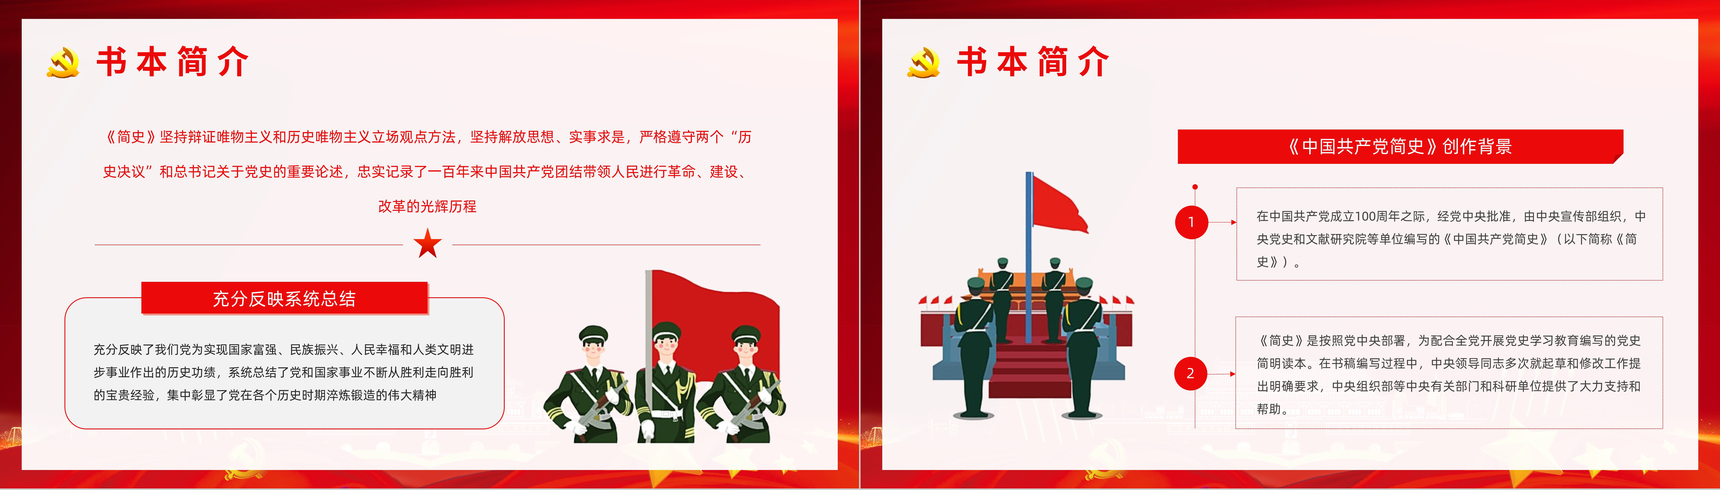 《中国共产党简史》学习基层党政党员学党史悟思想教育专题讲座PPT模板-4